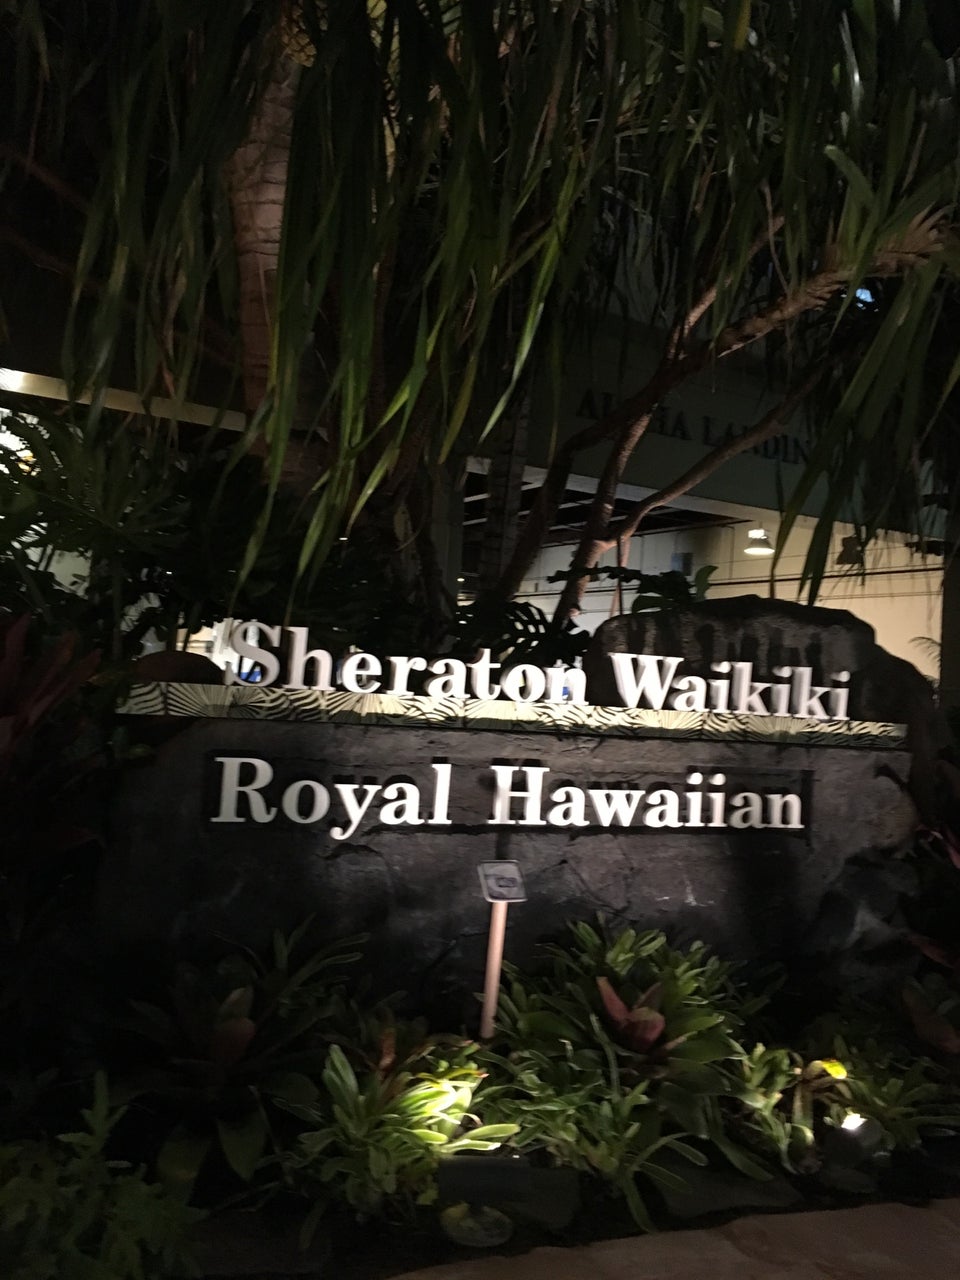 Photo of Sheraton Waikiki